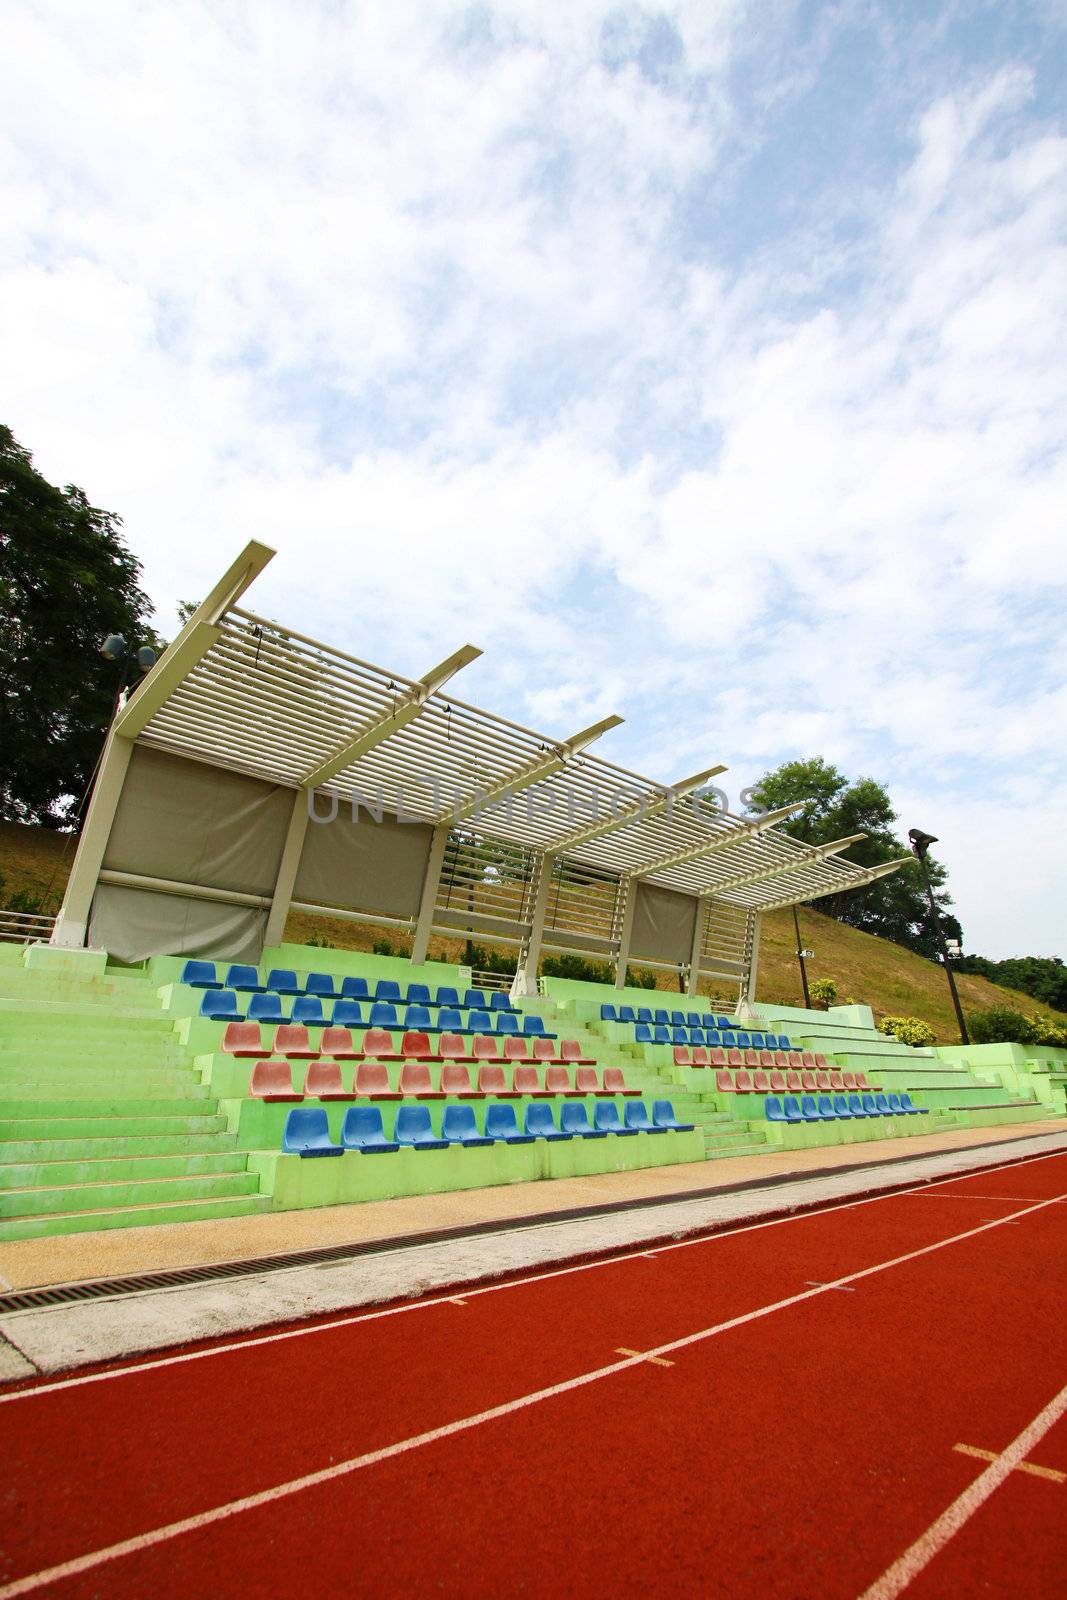 Stadium chairs and running track